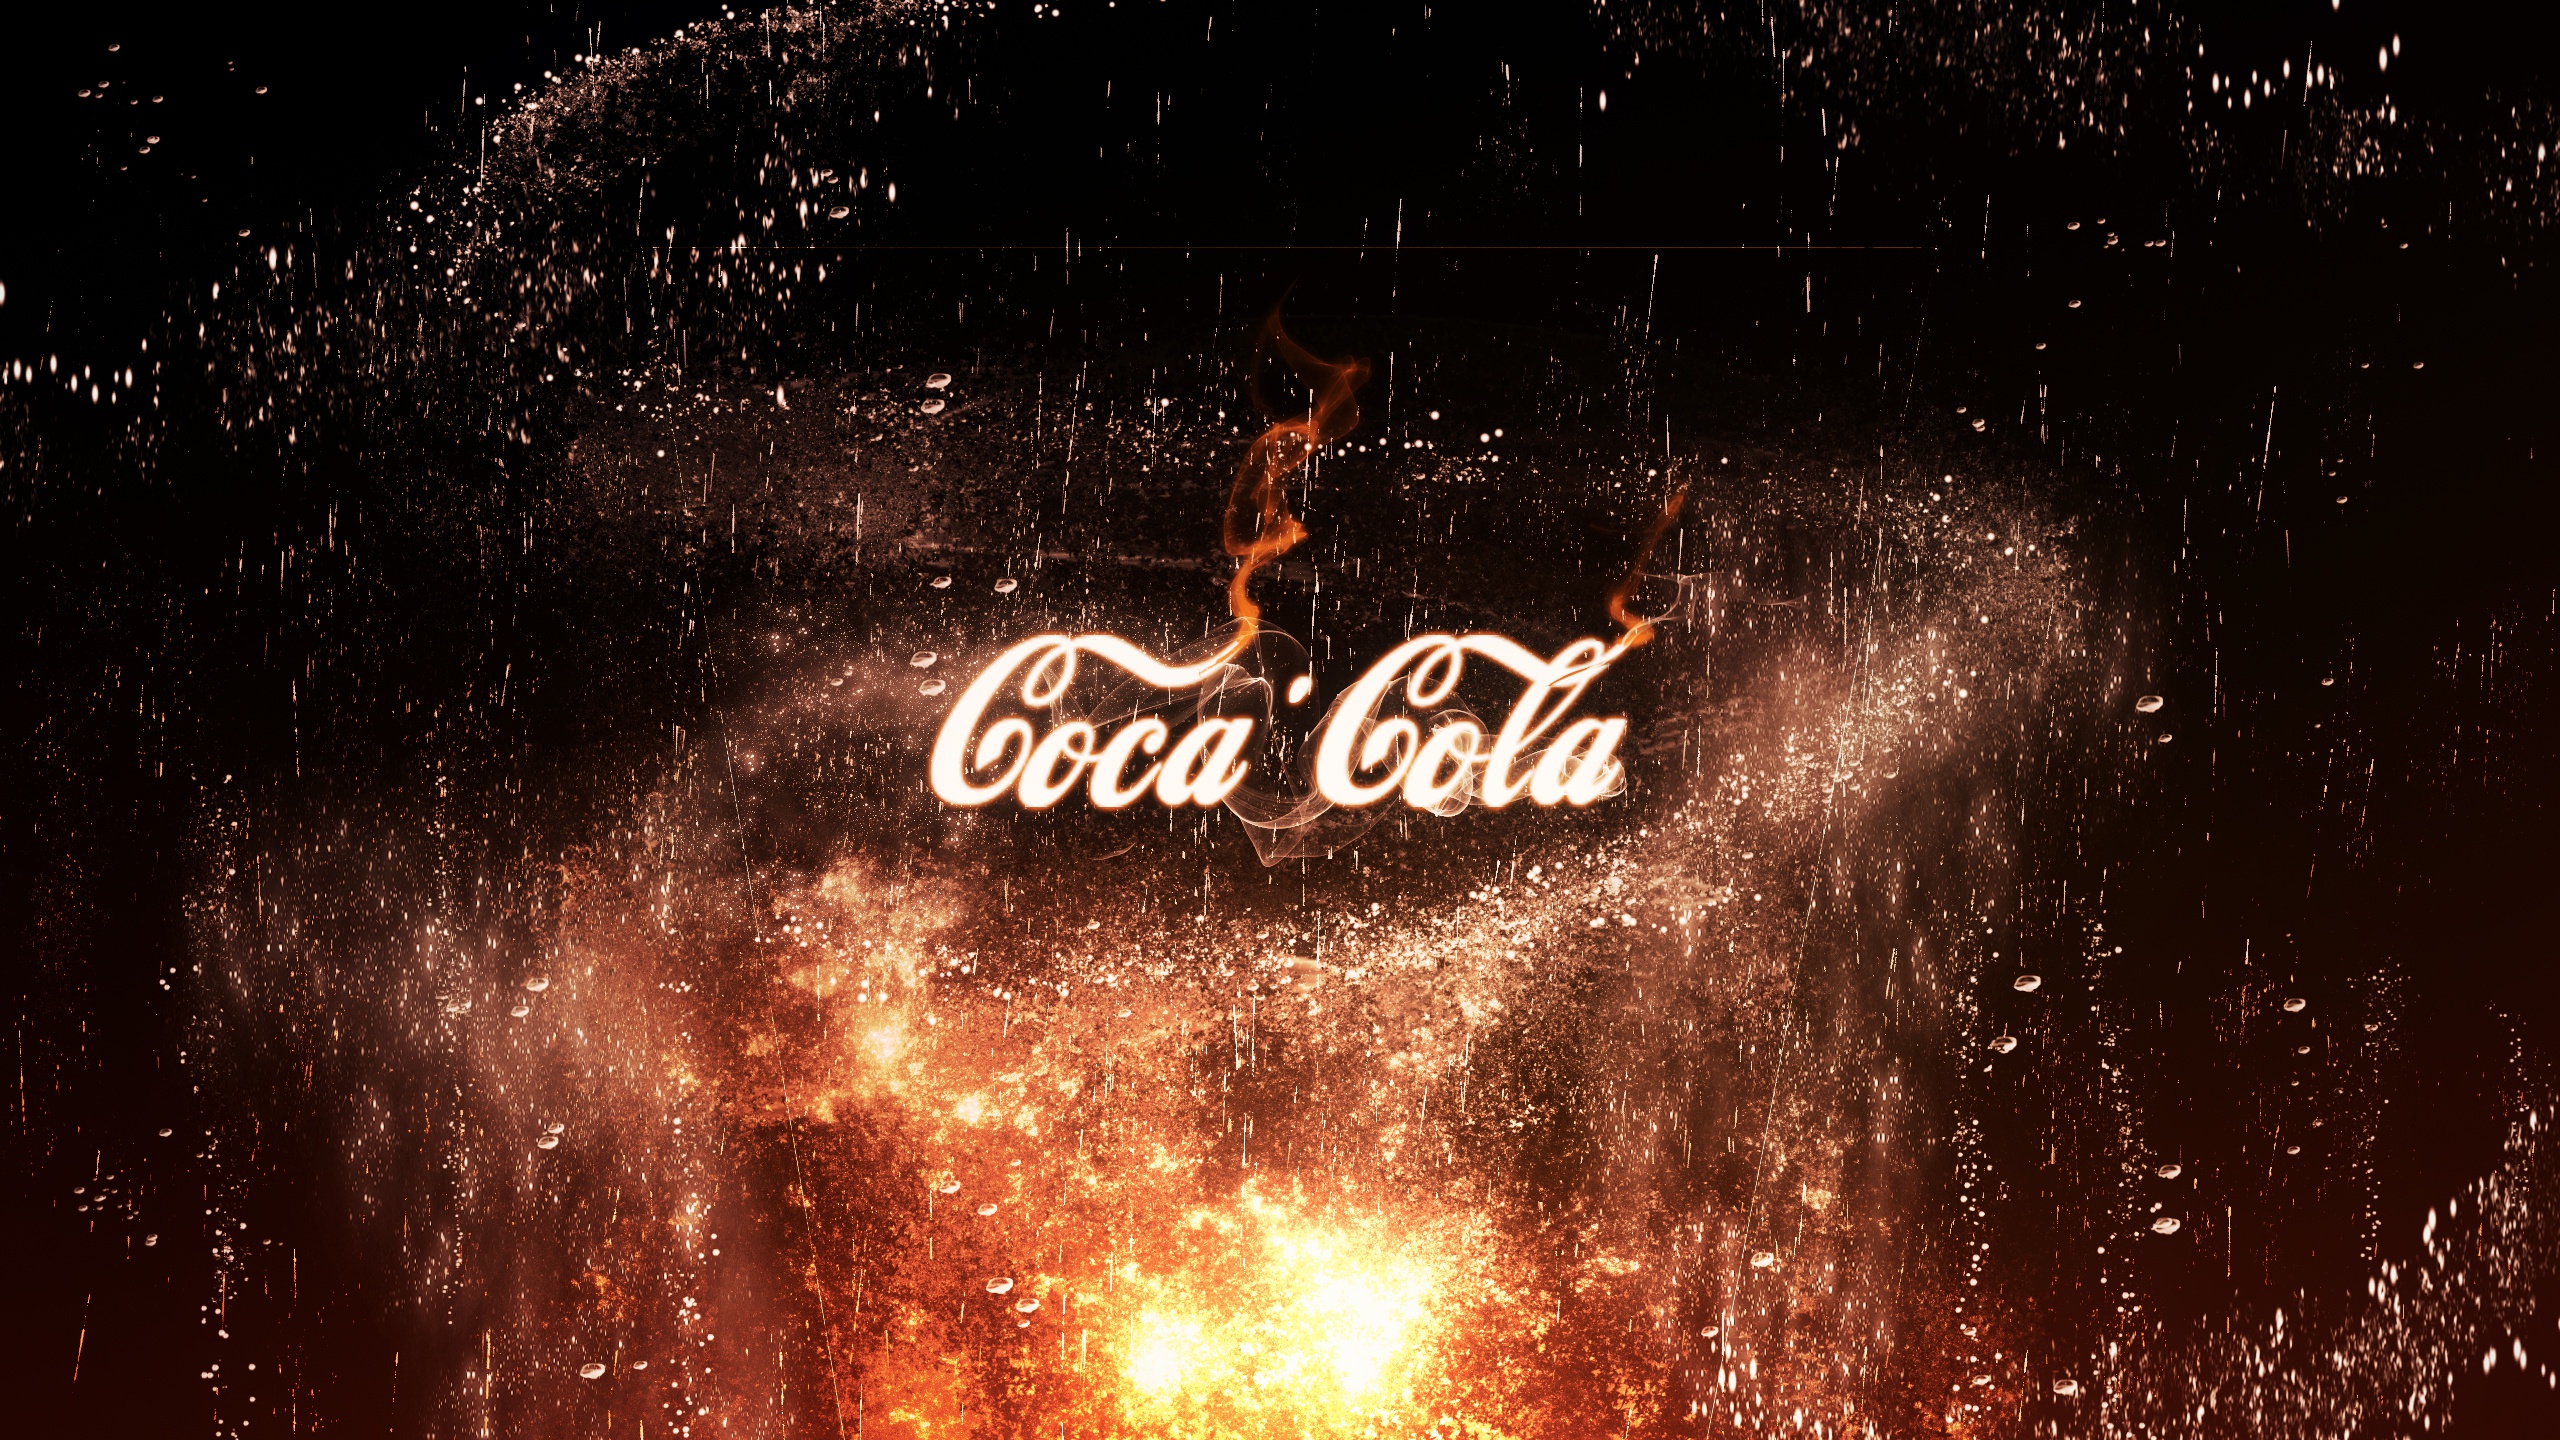 logo, Company, Coca Cola, Digital art Wallpaper